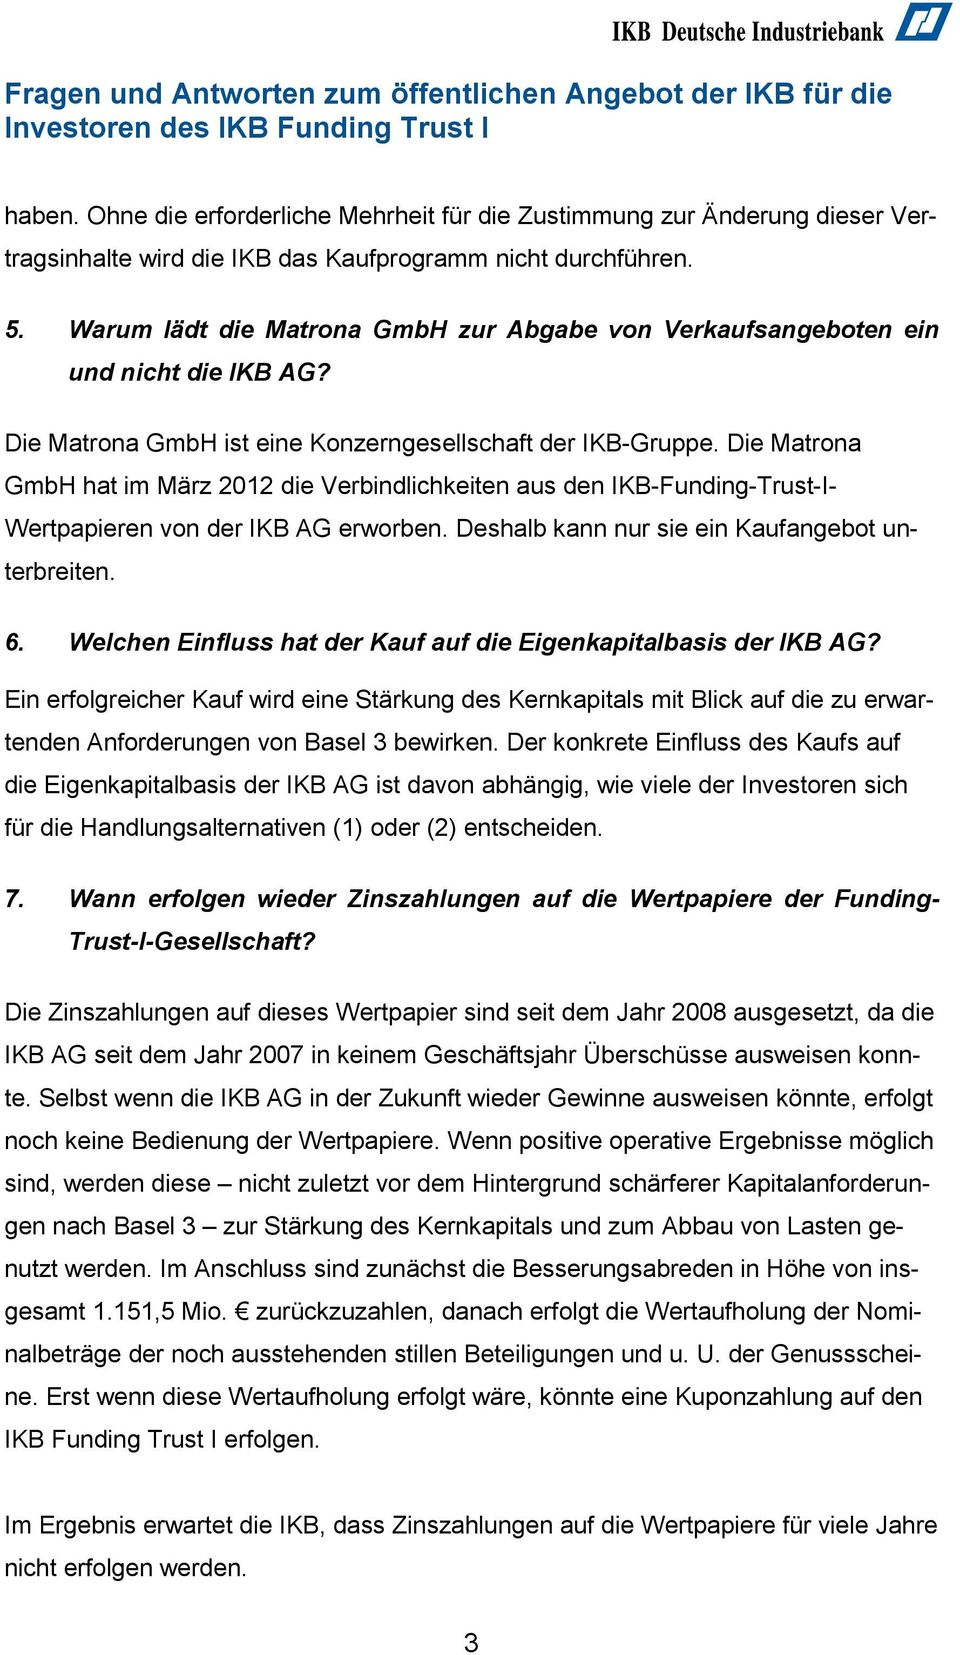 Die Matrona GmbH hat im März 2012 die Verbindlichkeiten aus den IKB-Funding-Trust-I- Wertpapieren von der IKB AG erworben. Deshalb kann nur sie ein Kaufangebot unterbreiten. 6.